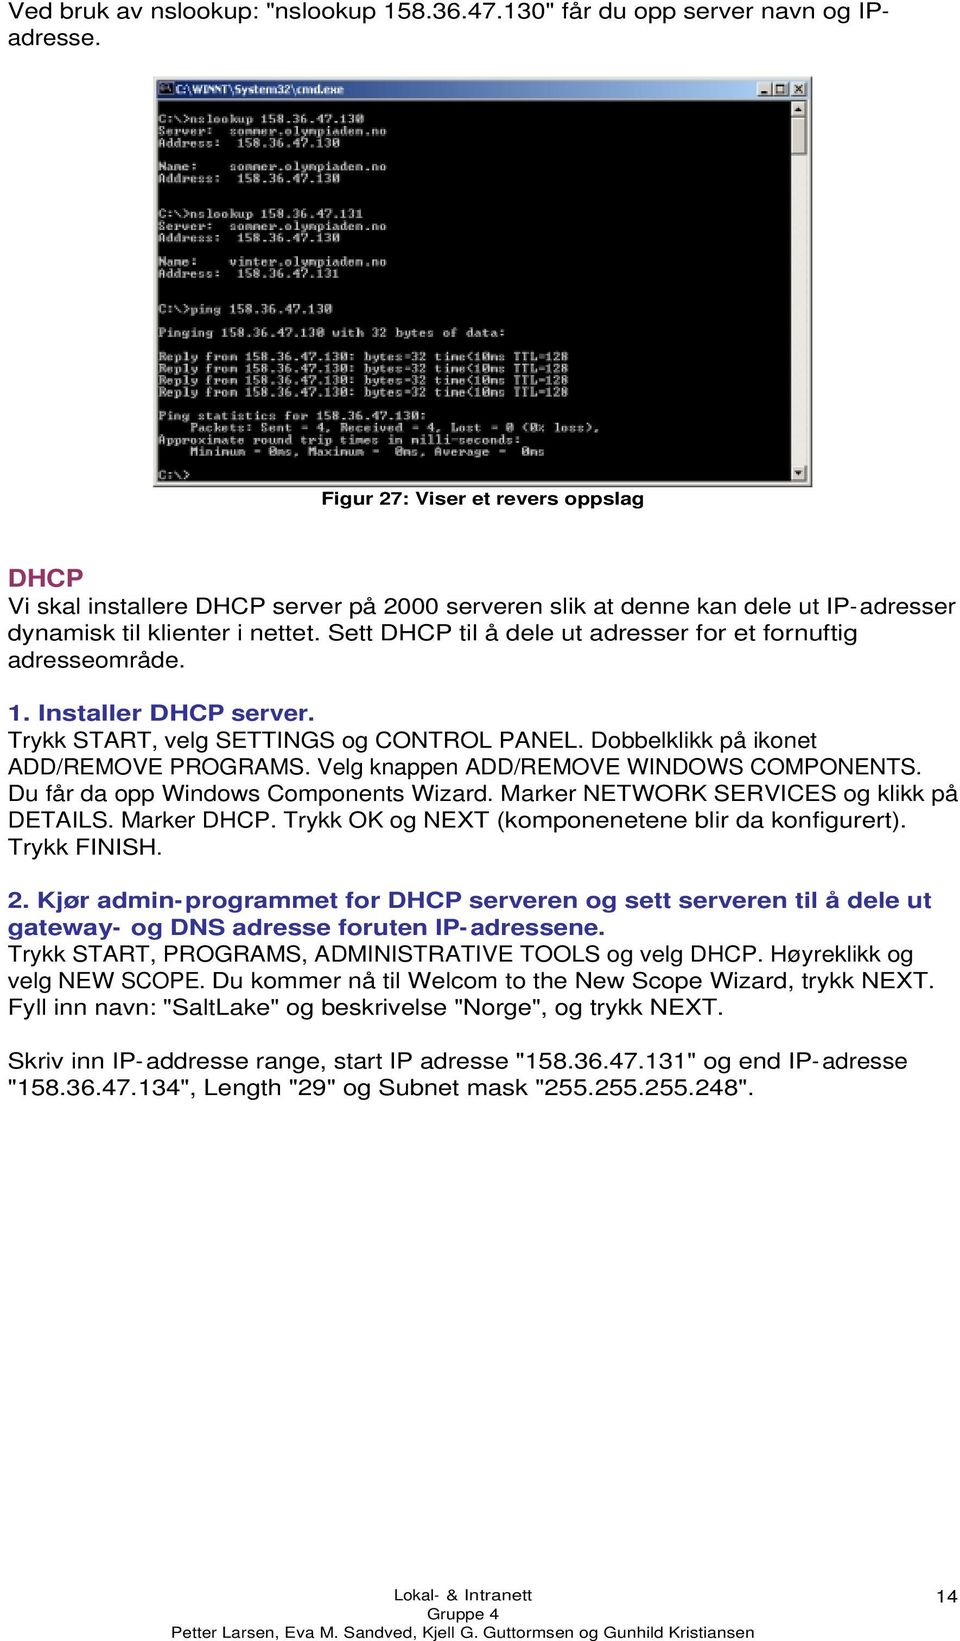 Sett DHCP til å dele ut adresser for et fornuftig adresseområde. 1. Installer DHCP server. Trykk START, velg SETTINGS og CONTROL PANEL. Dobbelklikk på ikonet ADD/REMOVE PROGRAMS.